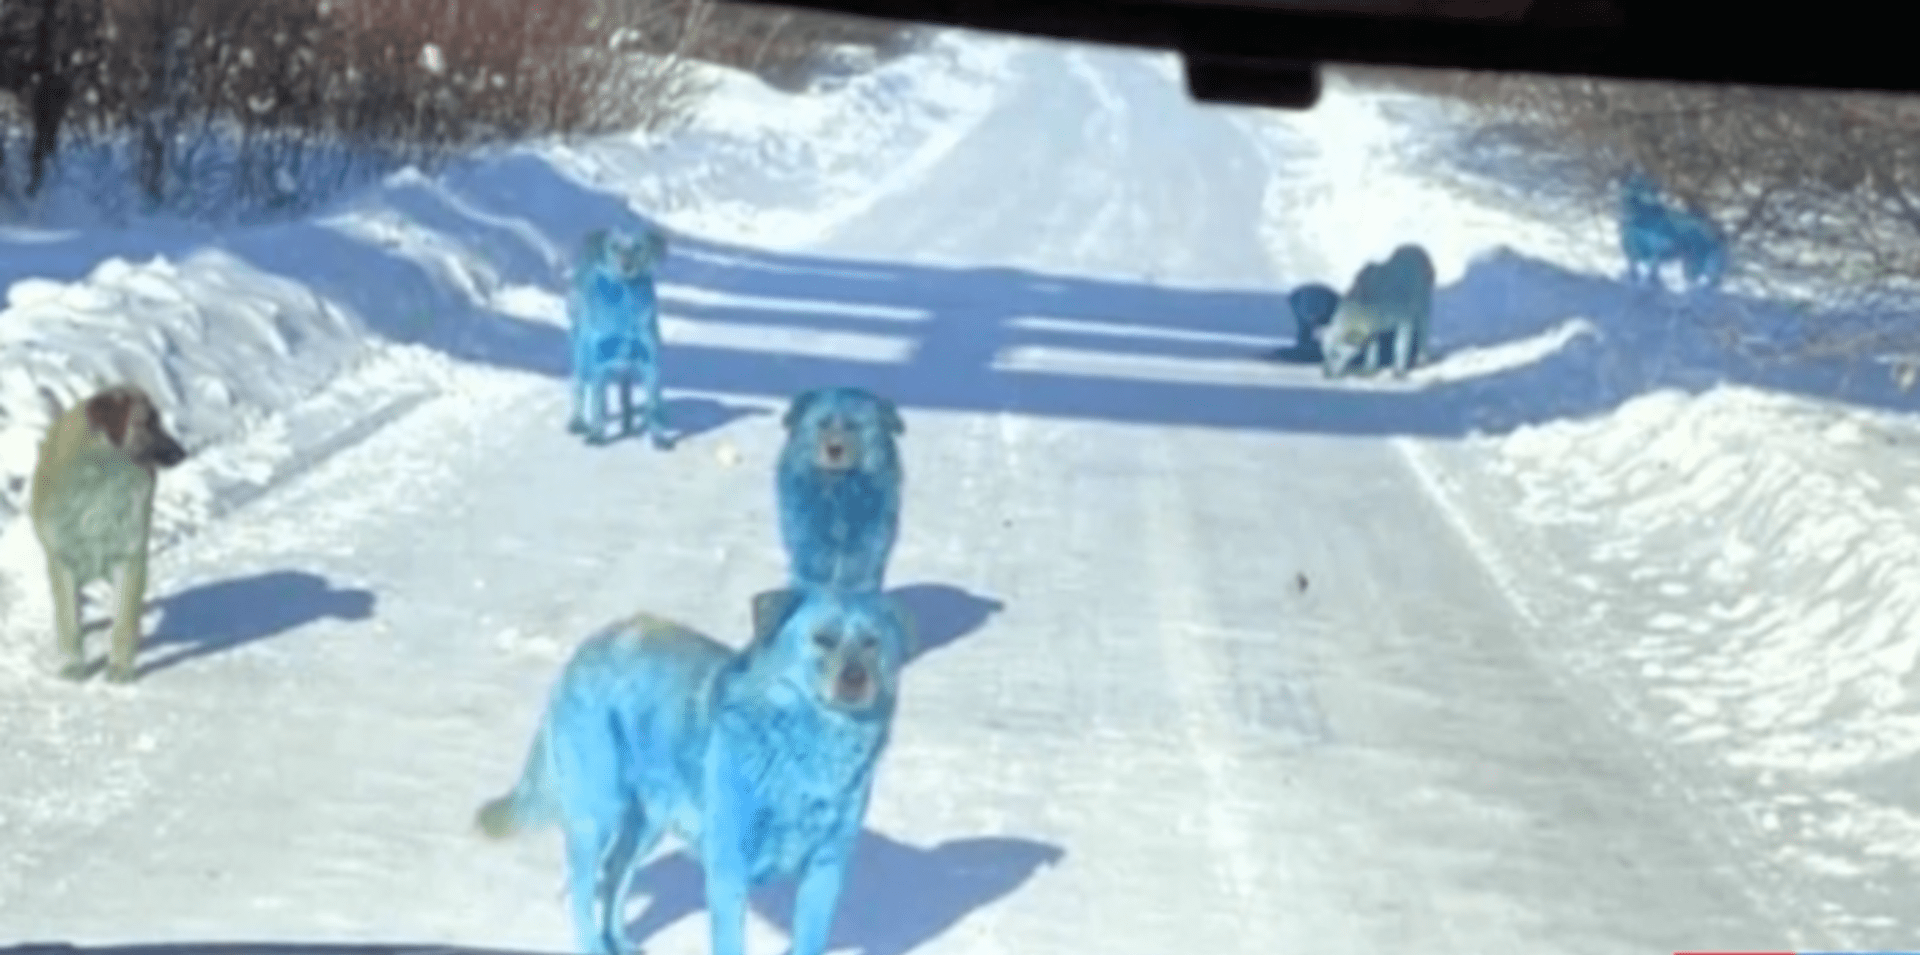 Na západě Ruska byla vyfocena smečka psů s modrou srstí. Nyní se zjišťuje, zda se jedná o vtip nebo ekologický problém. (Zdroj: CNN Prima NEWS)